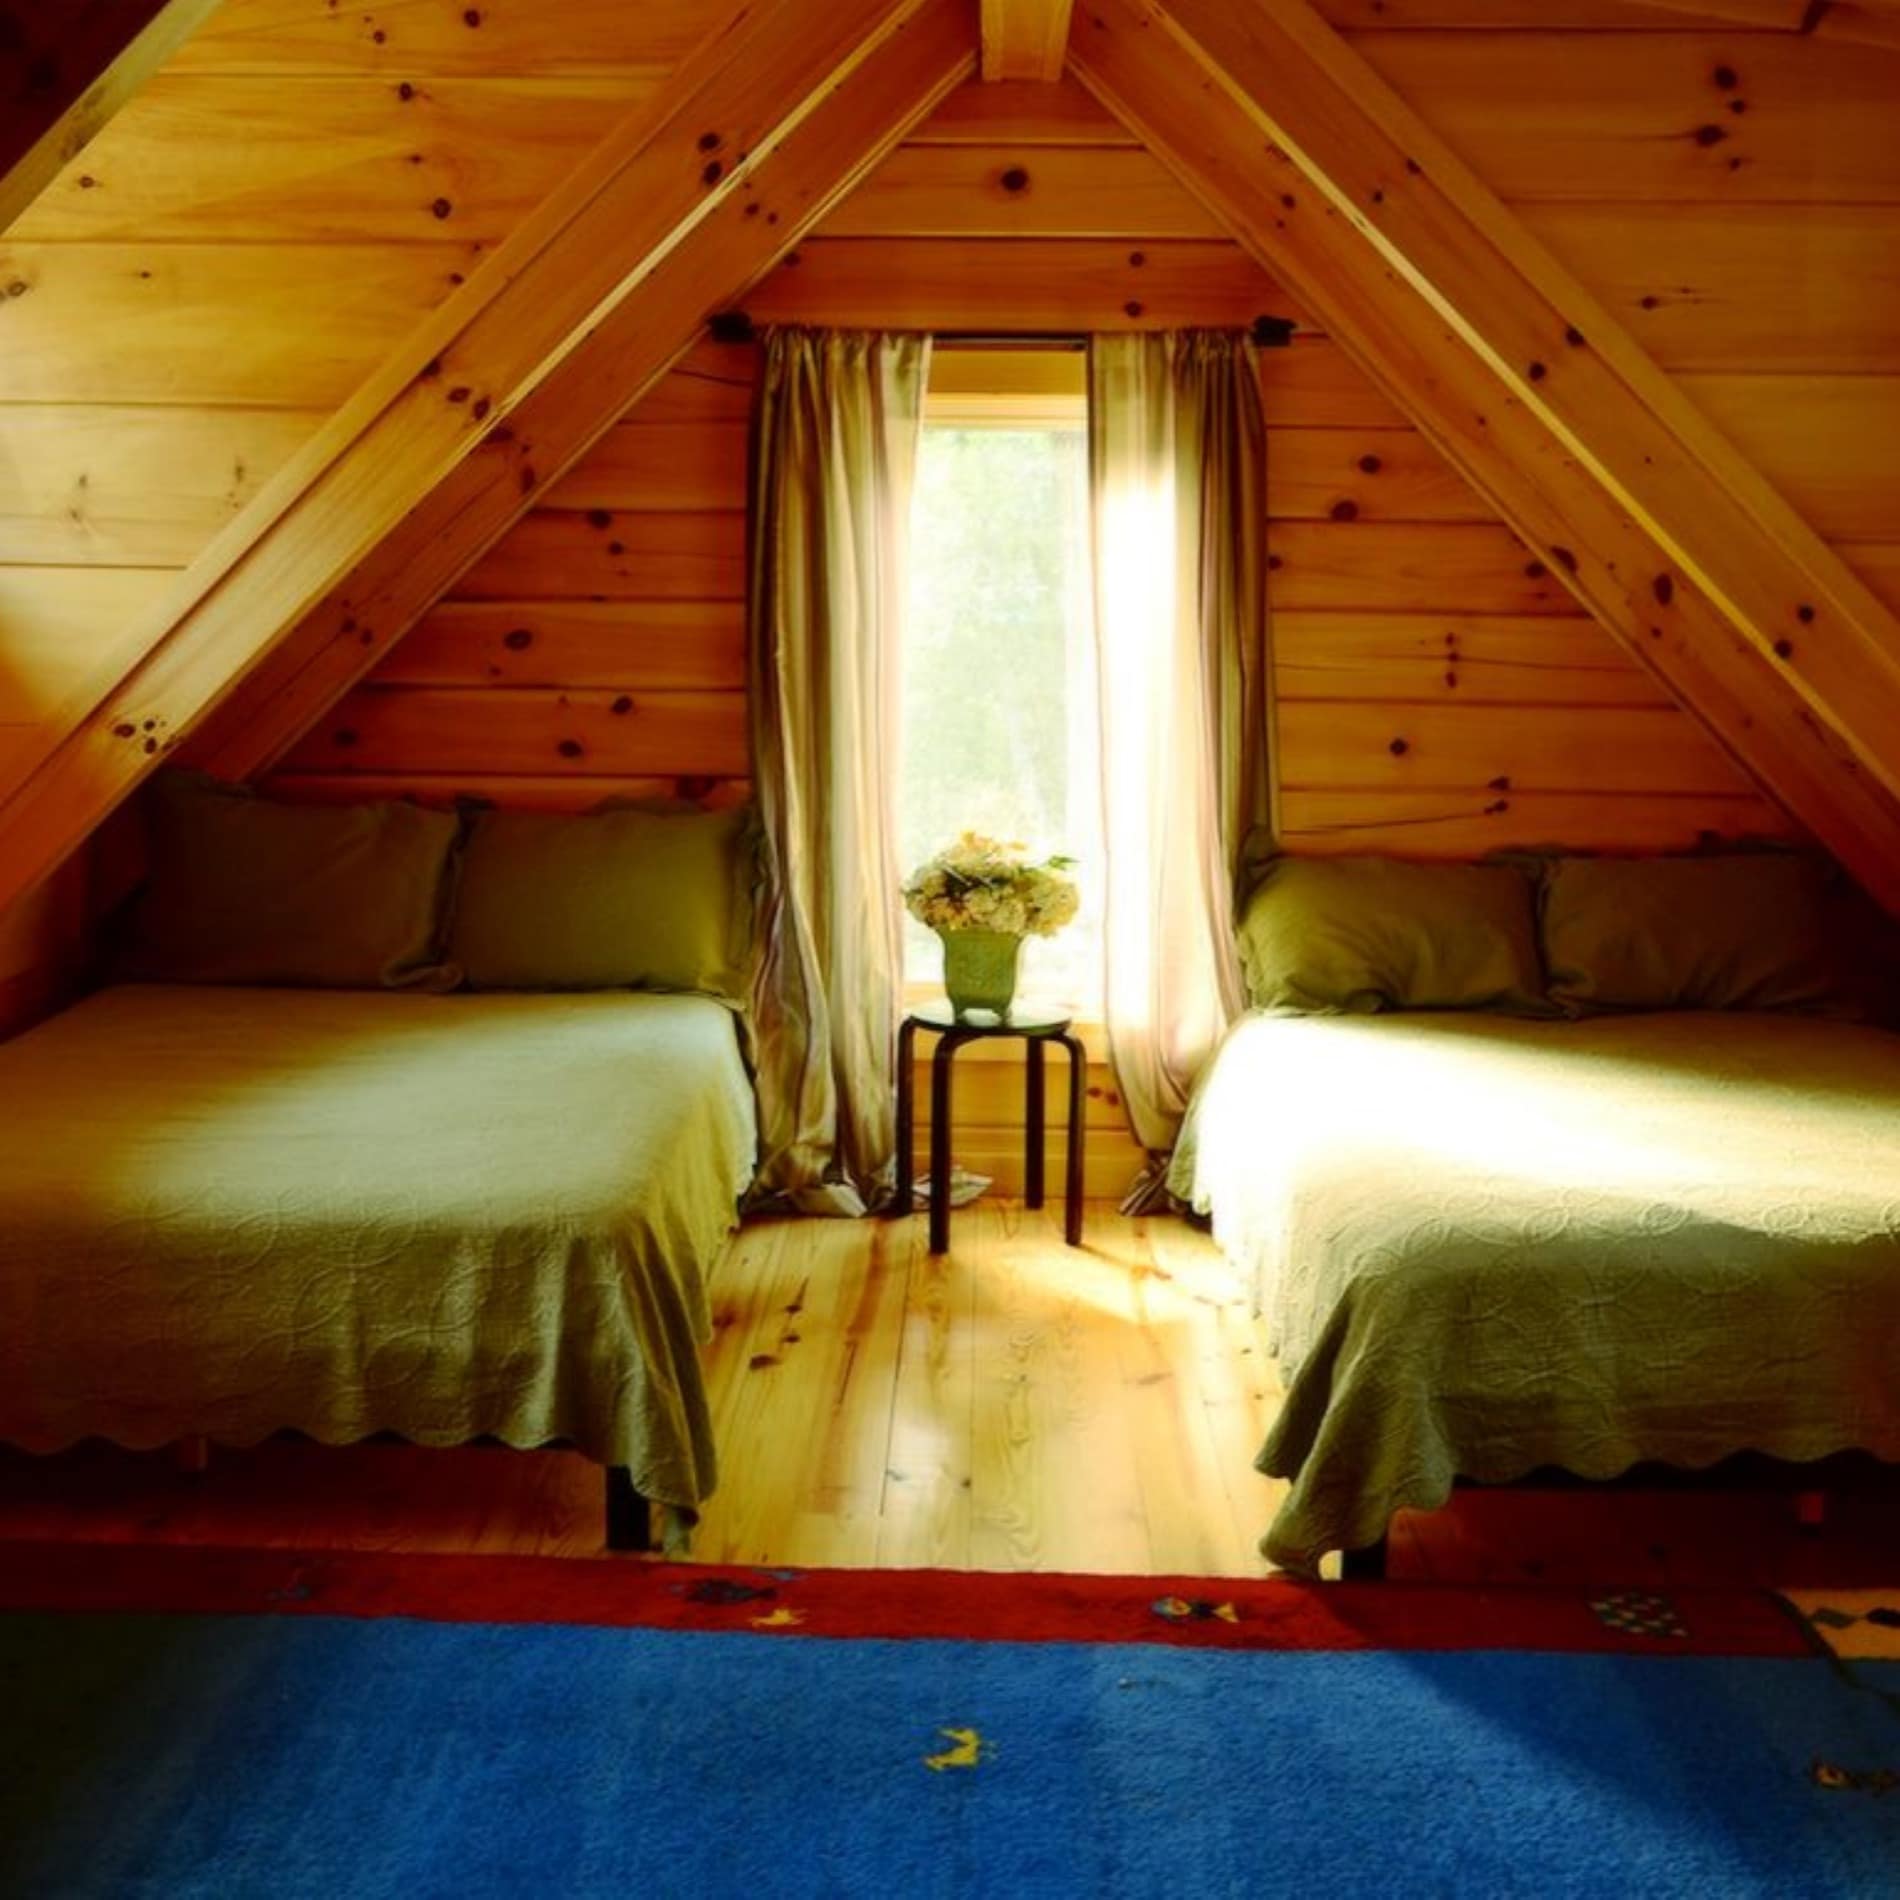 Acogedor interior de una cabaña de madera